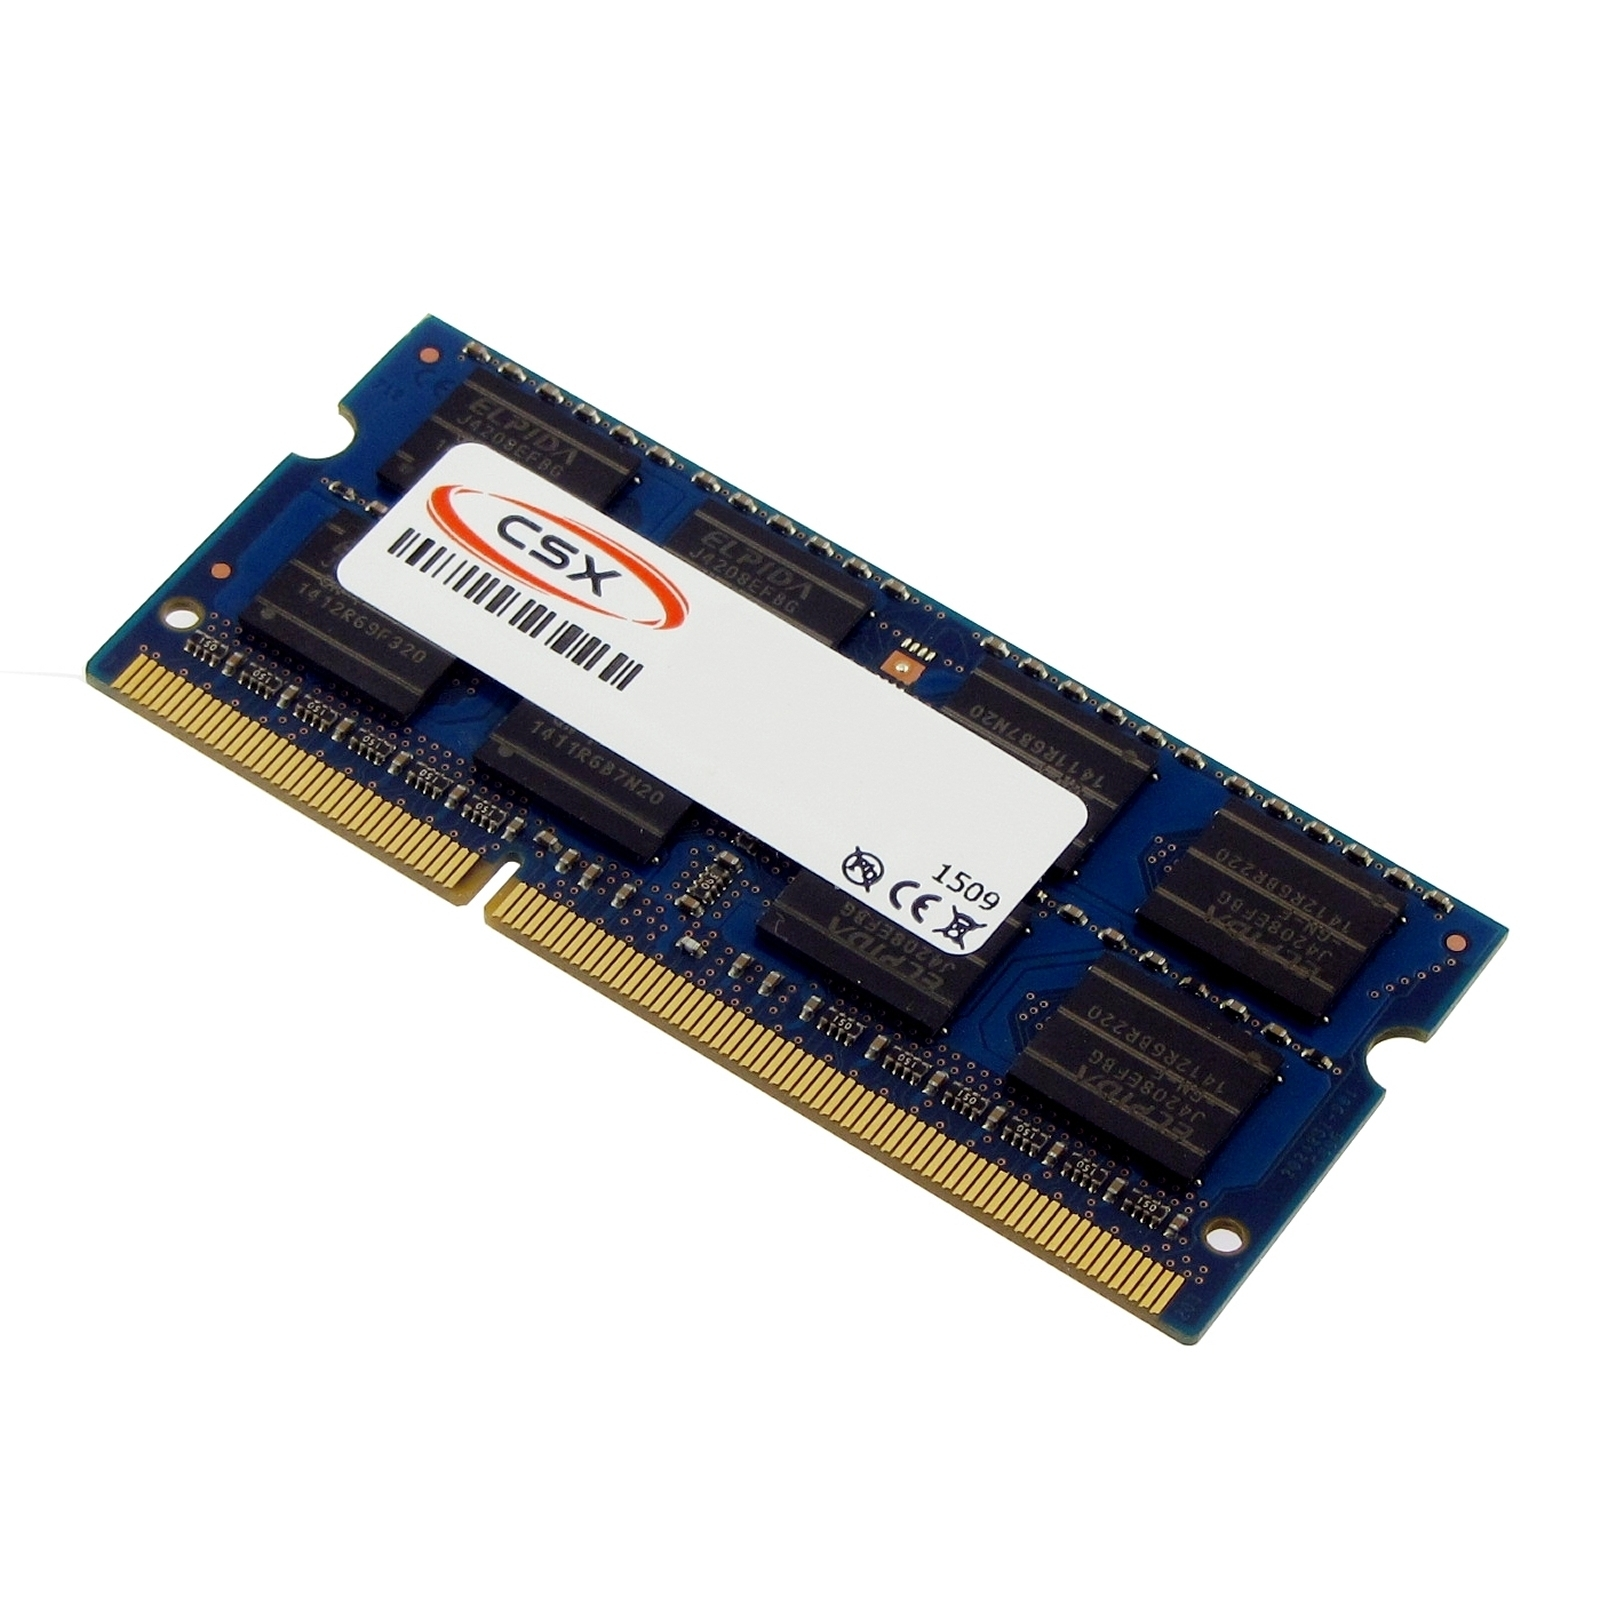 MTXTEC Arbeitsspeicher 2 C650-1CT GB Satellite Notebook-Speicher 2 DDR3 TOSHIBA GB RAM für